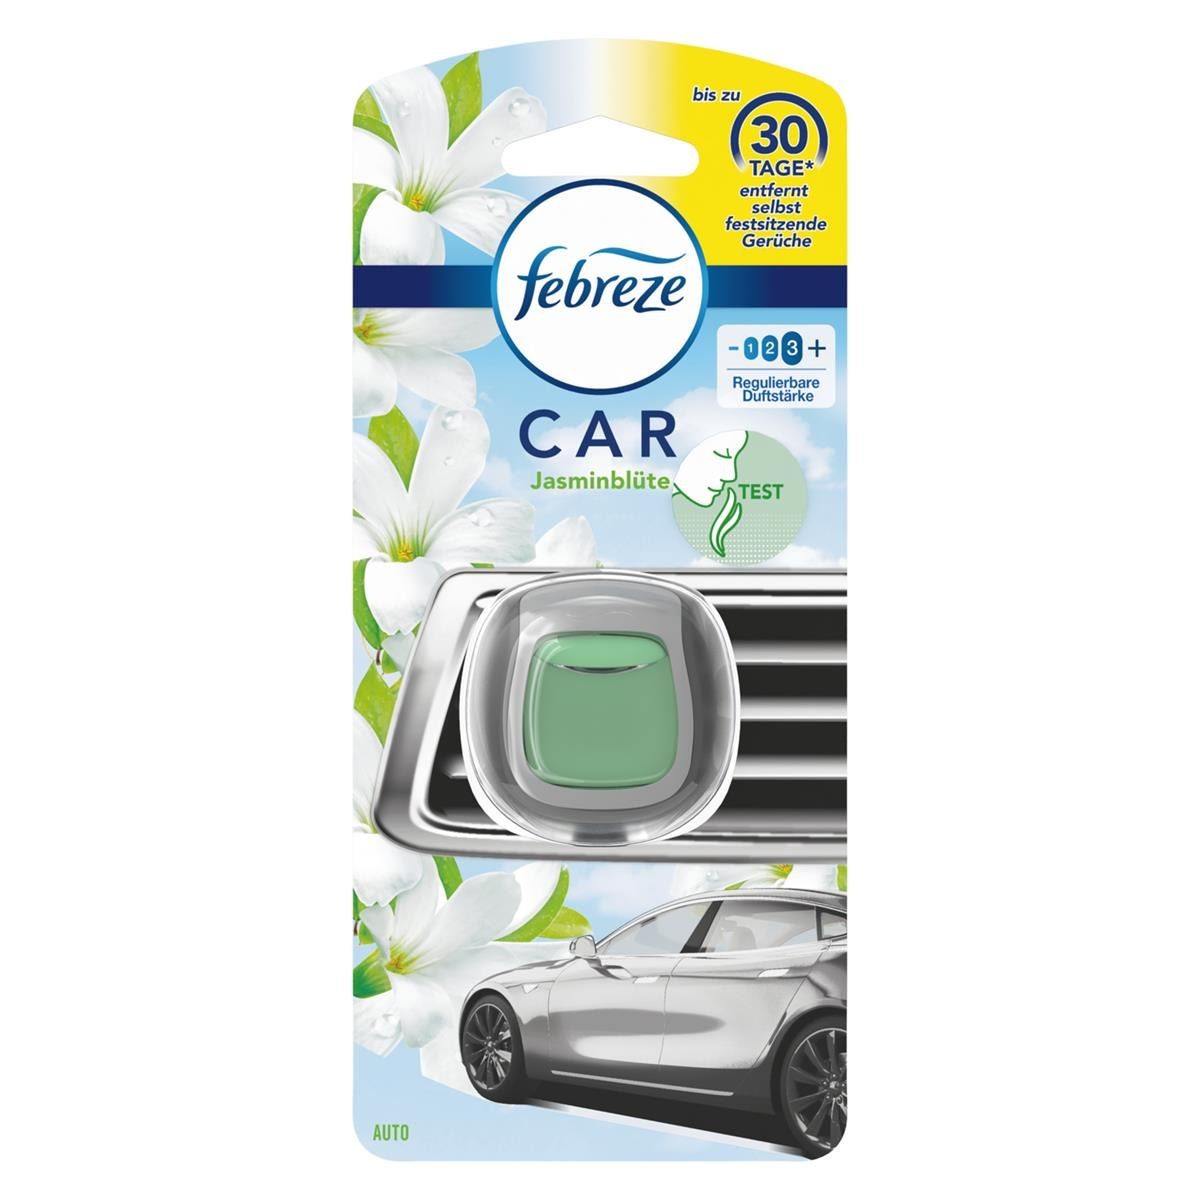 Guter Duft im Auto / Lufterfrischer für den Innenraum / Fahrzeugduft